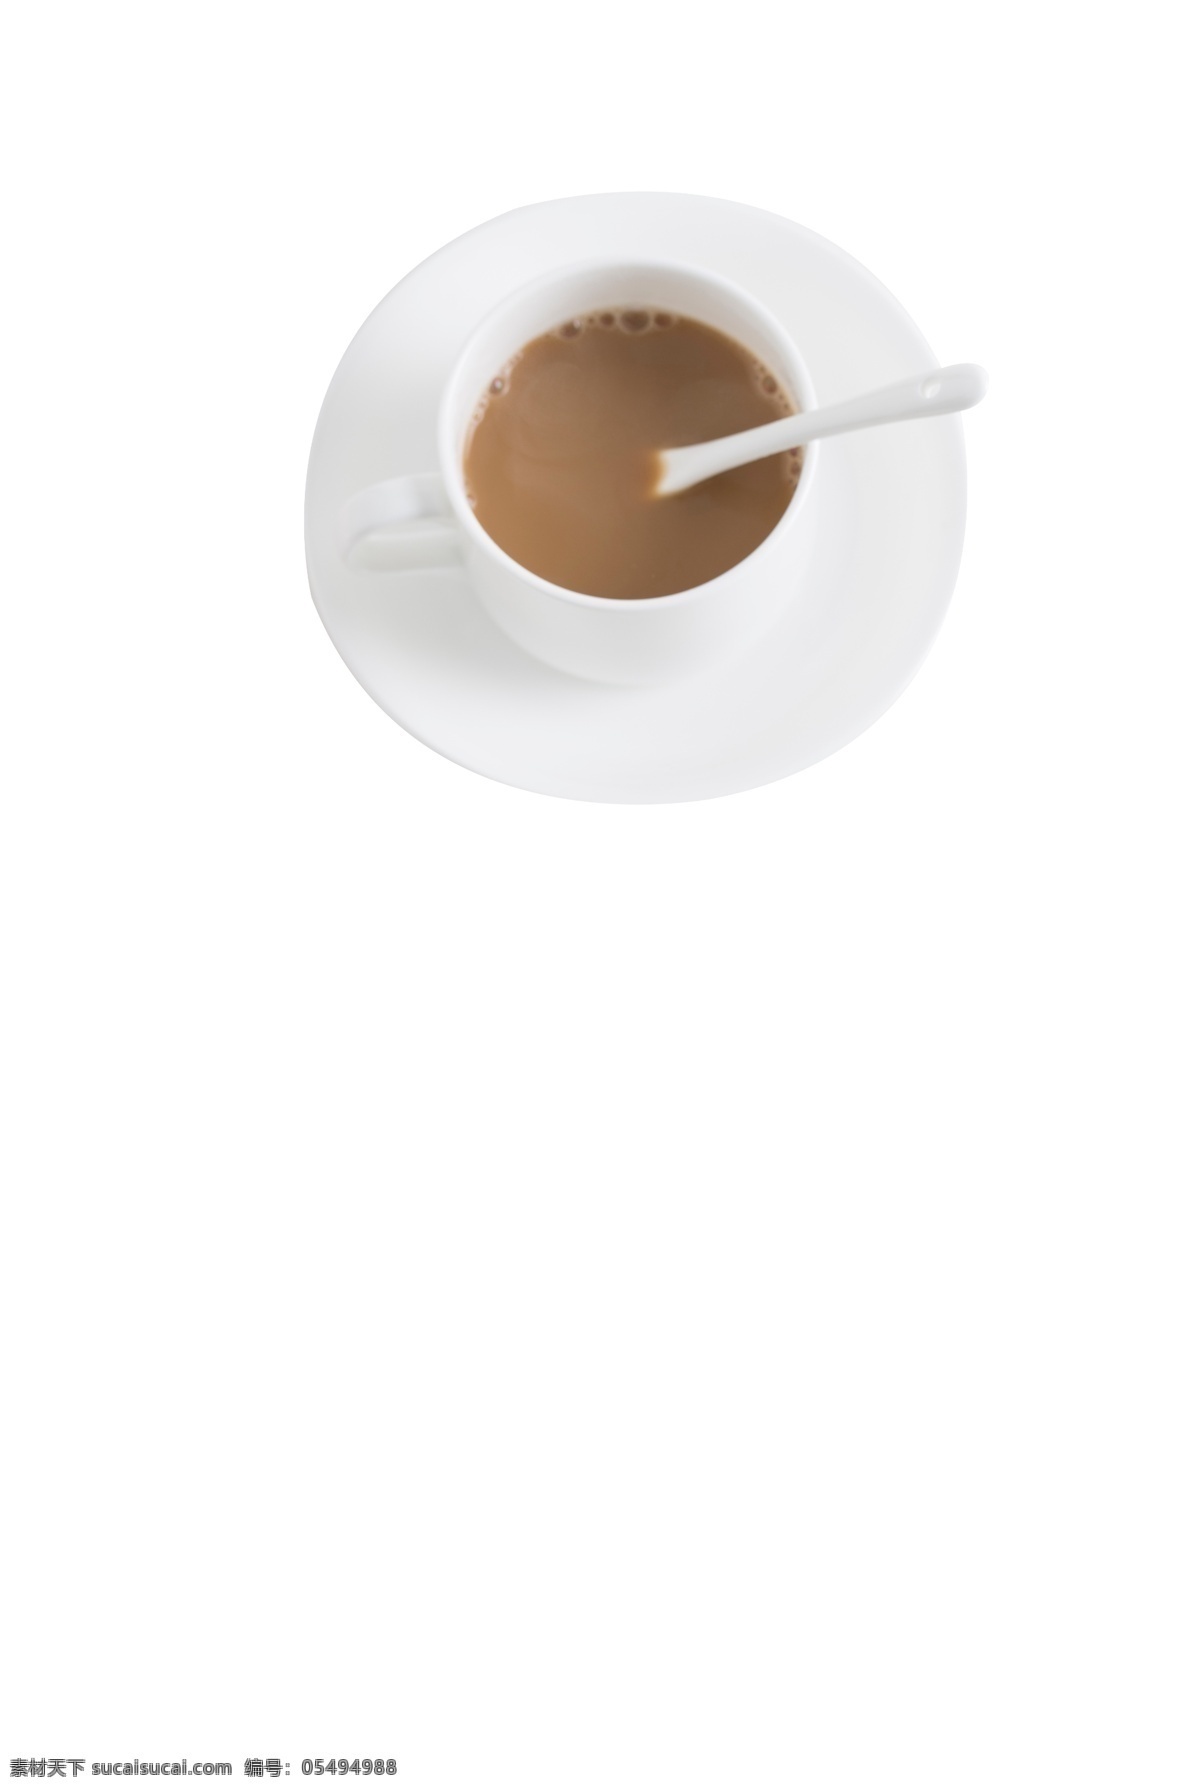 下午 茶 浓香 美味 咖啡 下午茶 浓香咖啡 咖啡杯 杯碟 咖啡勺子 热饮 美式咖啡 黑咖啡 陶瓷 香醇